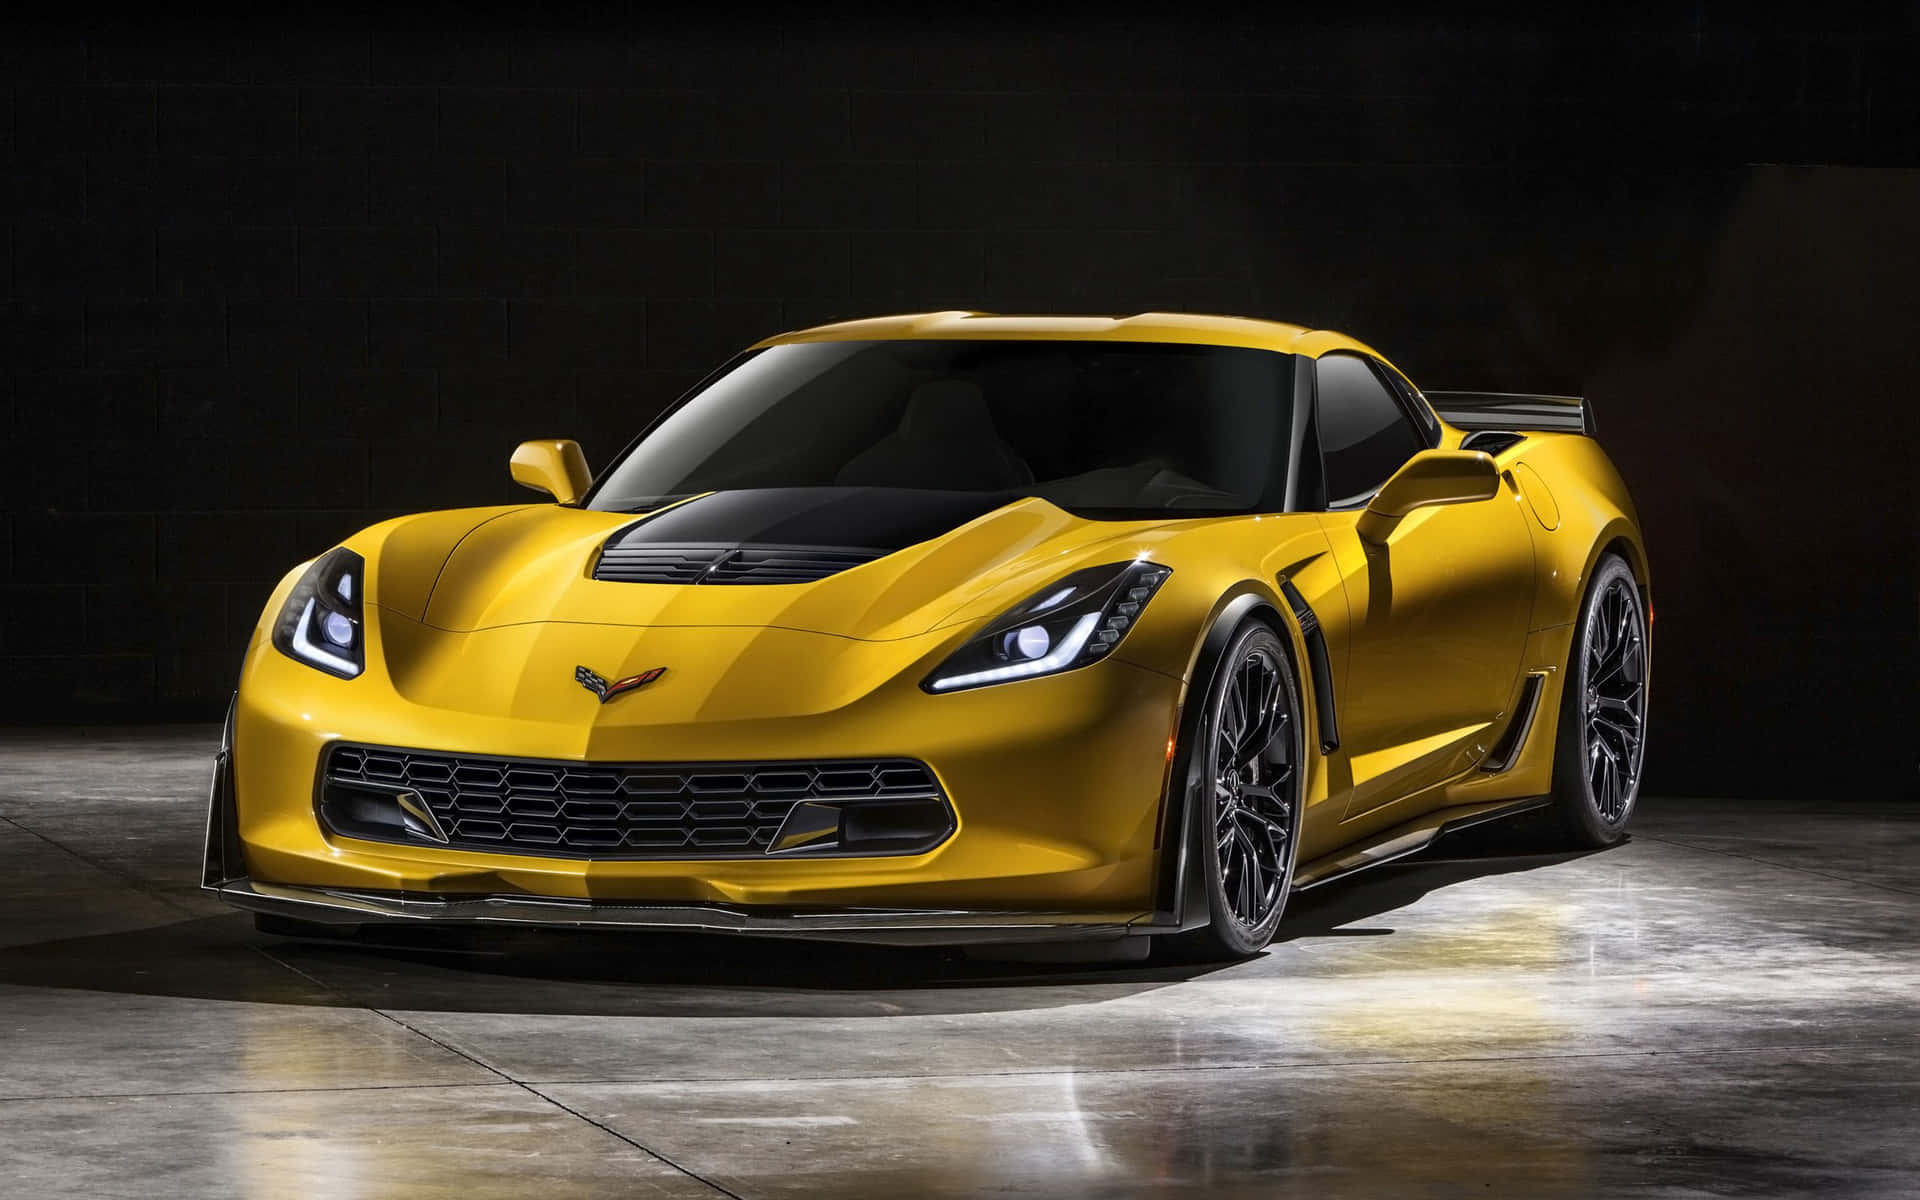 Klassiskamerikansk Muskelbil: Corvette